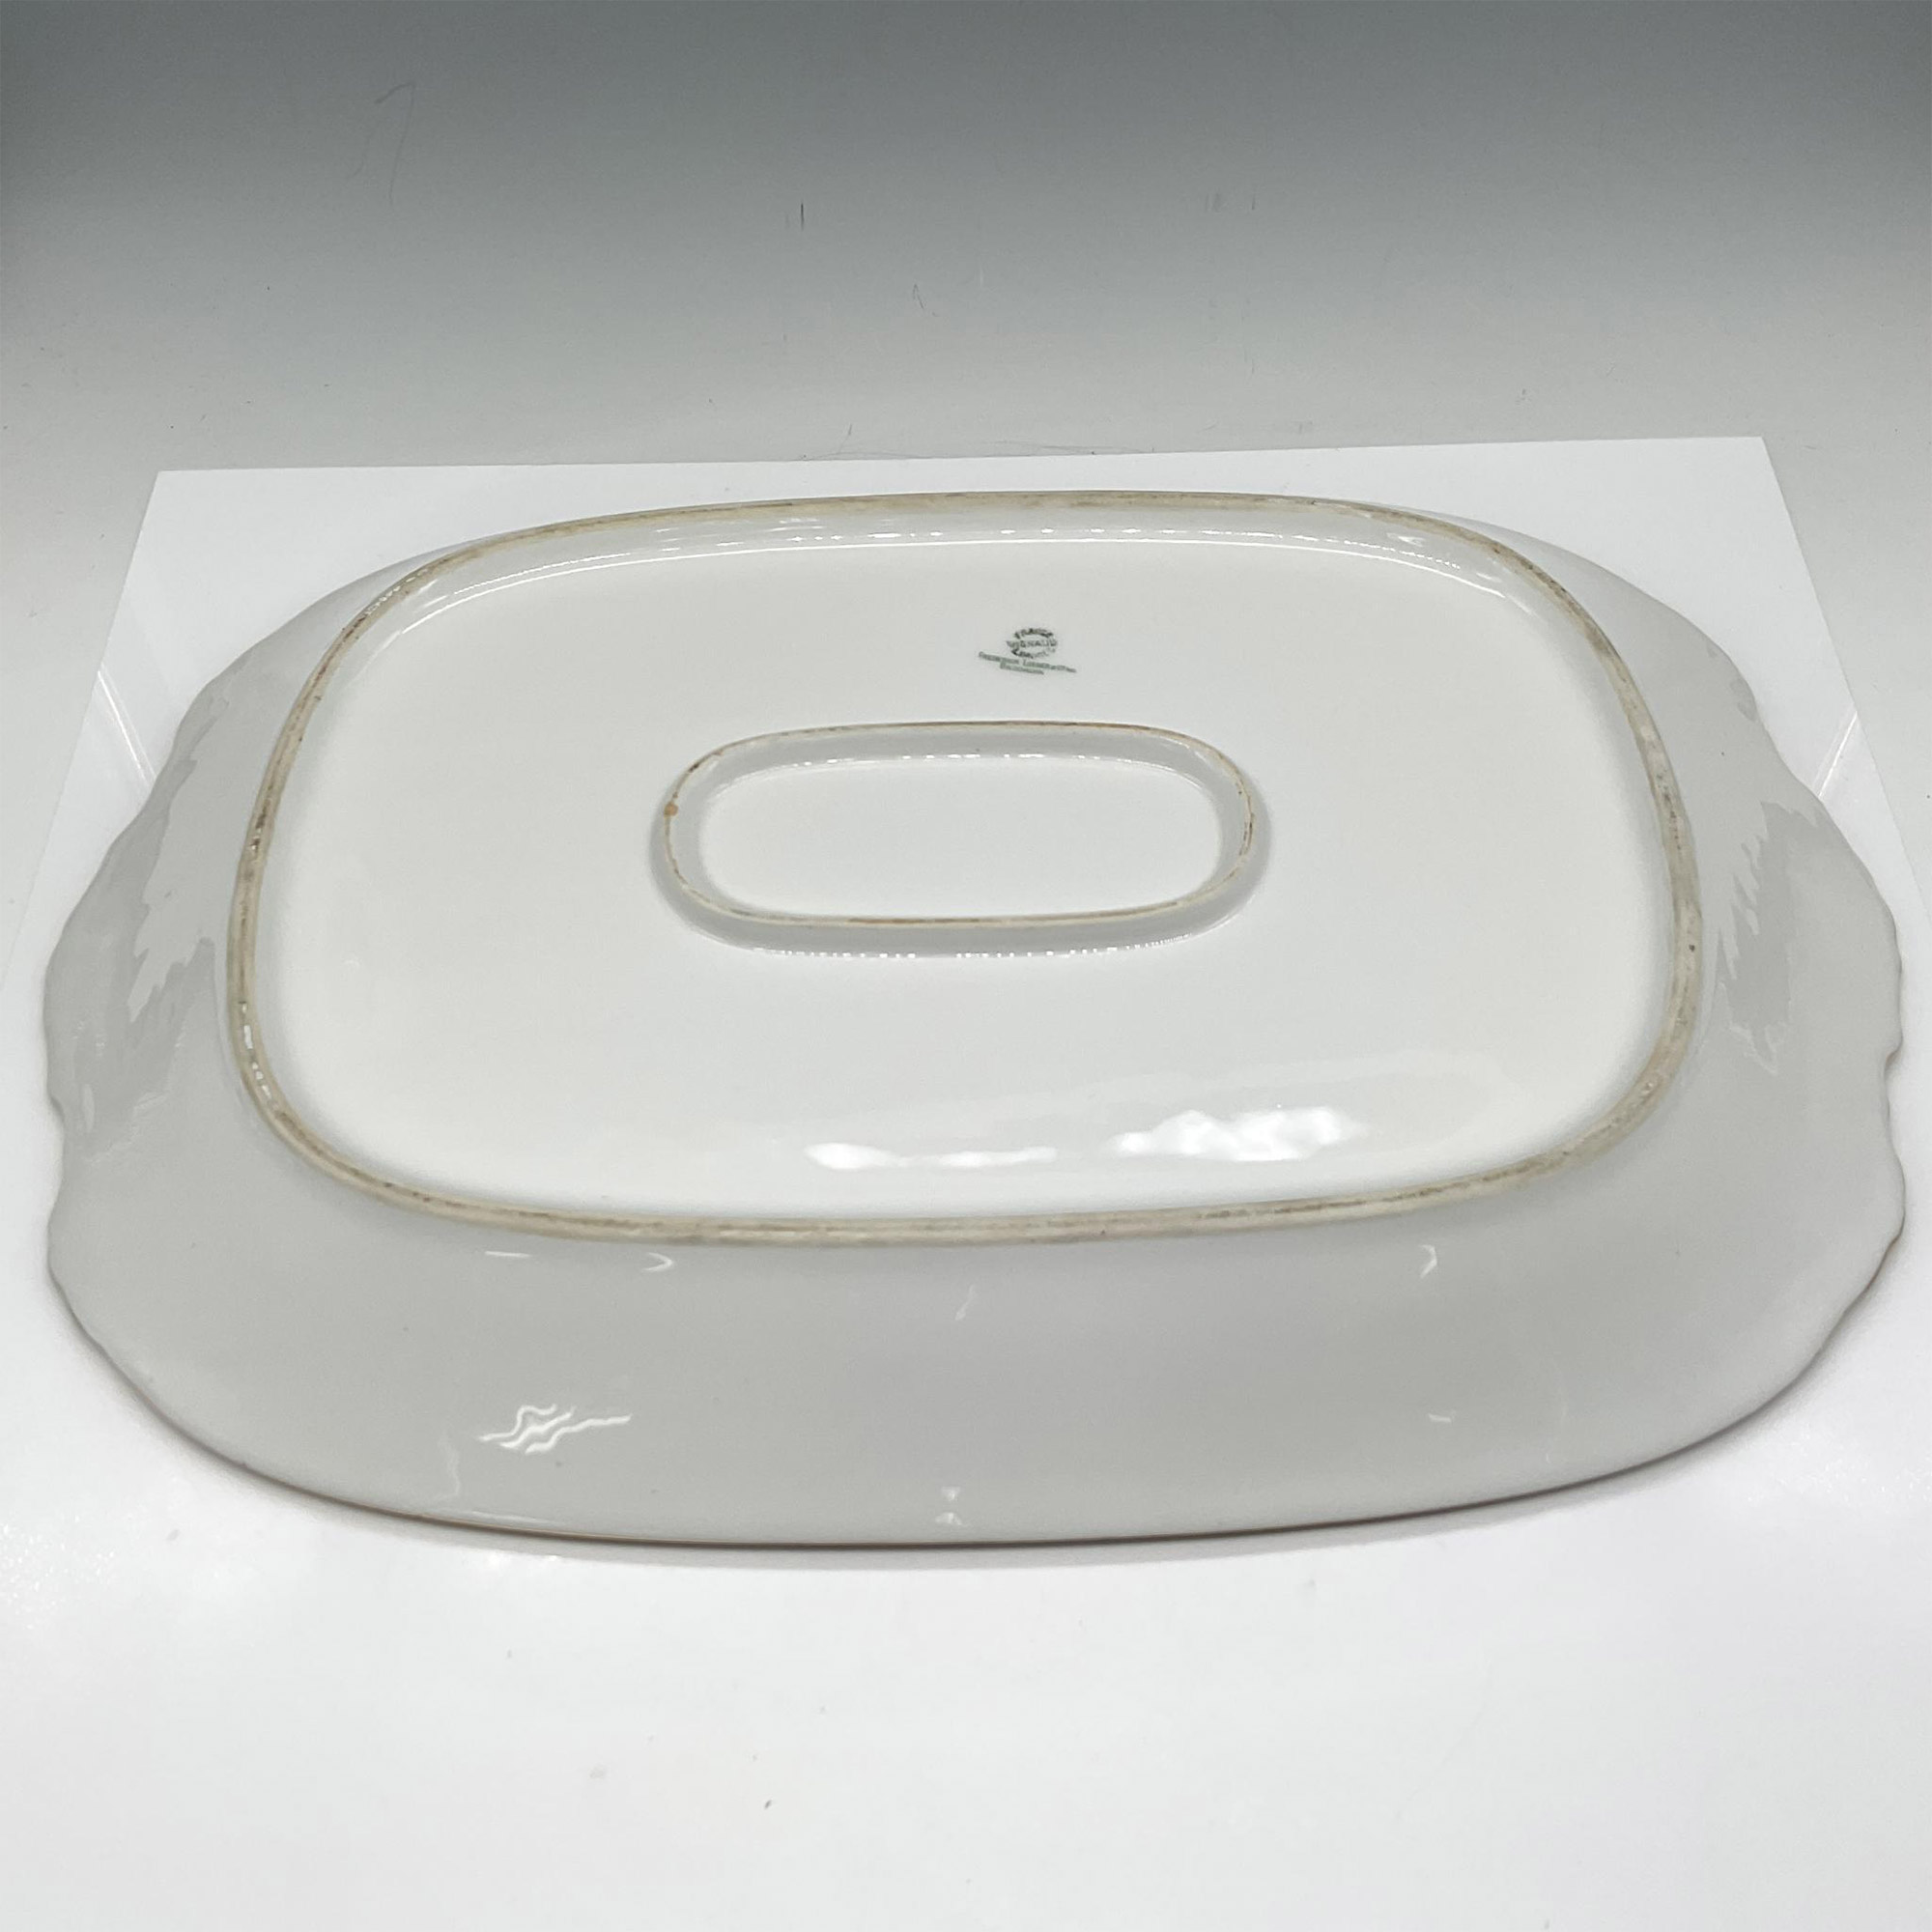 Limoges Vignaud Porcelain Serveware, Large Oval Platter - Image 3 of 3